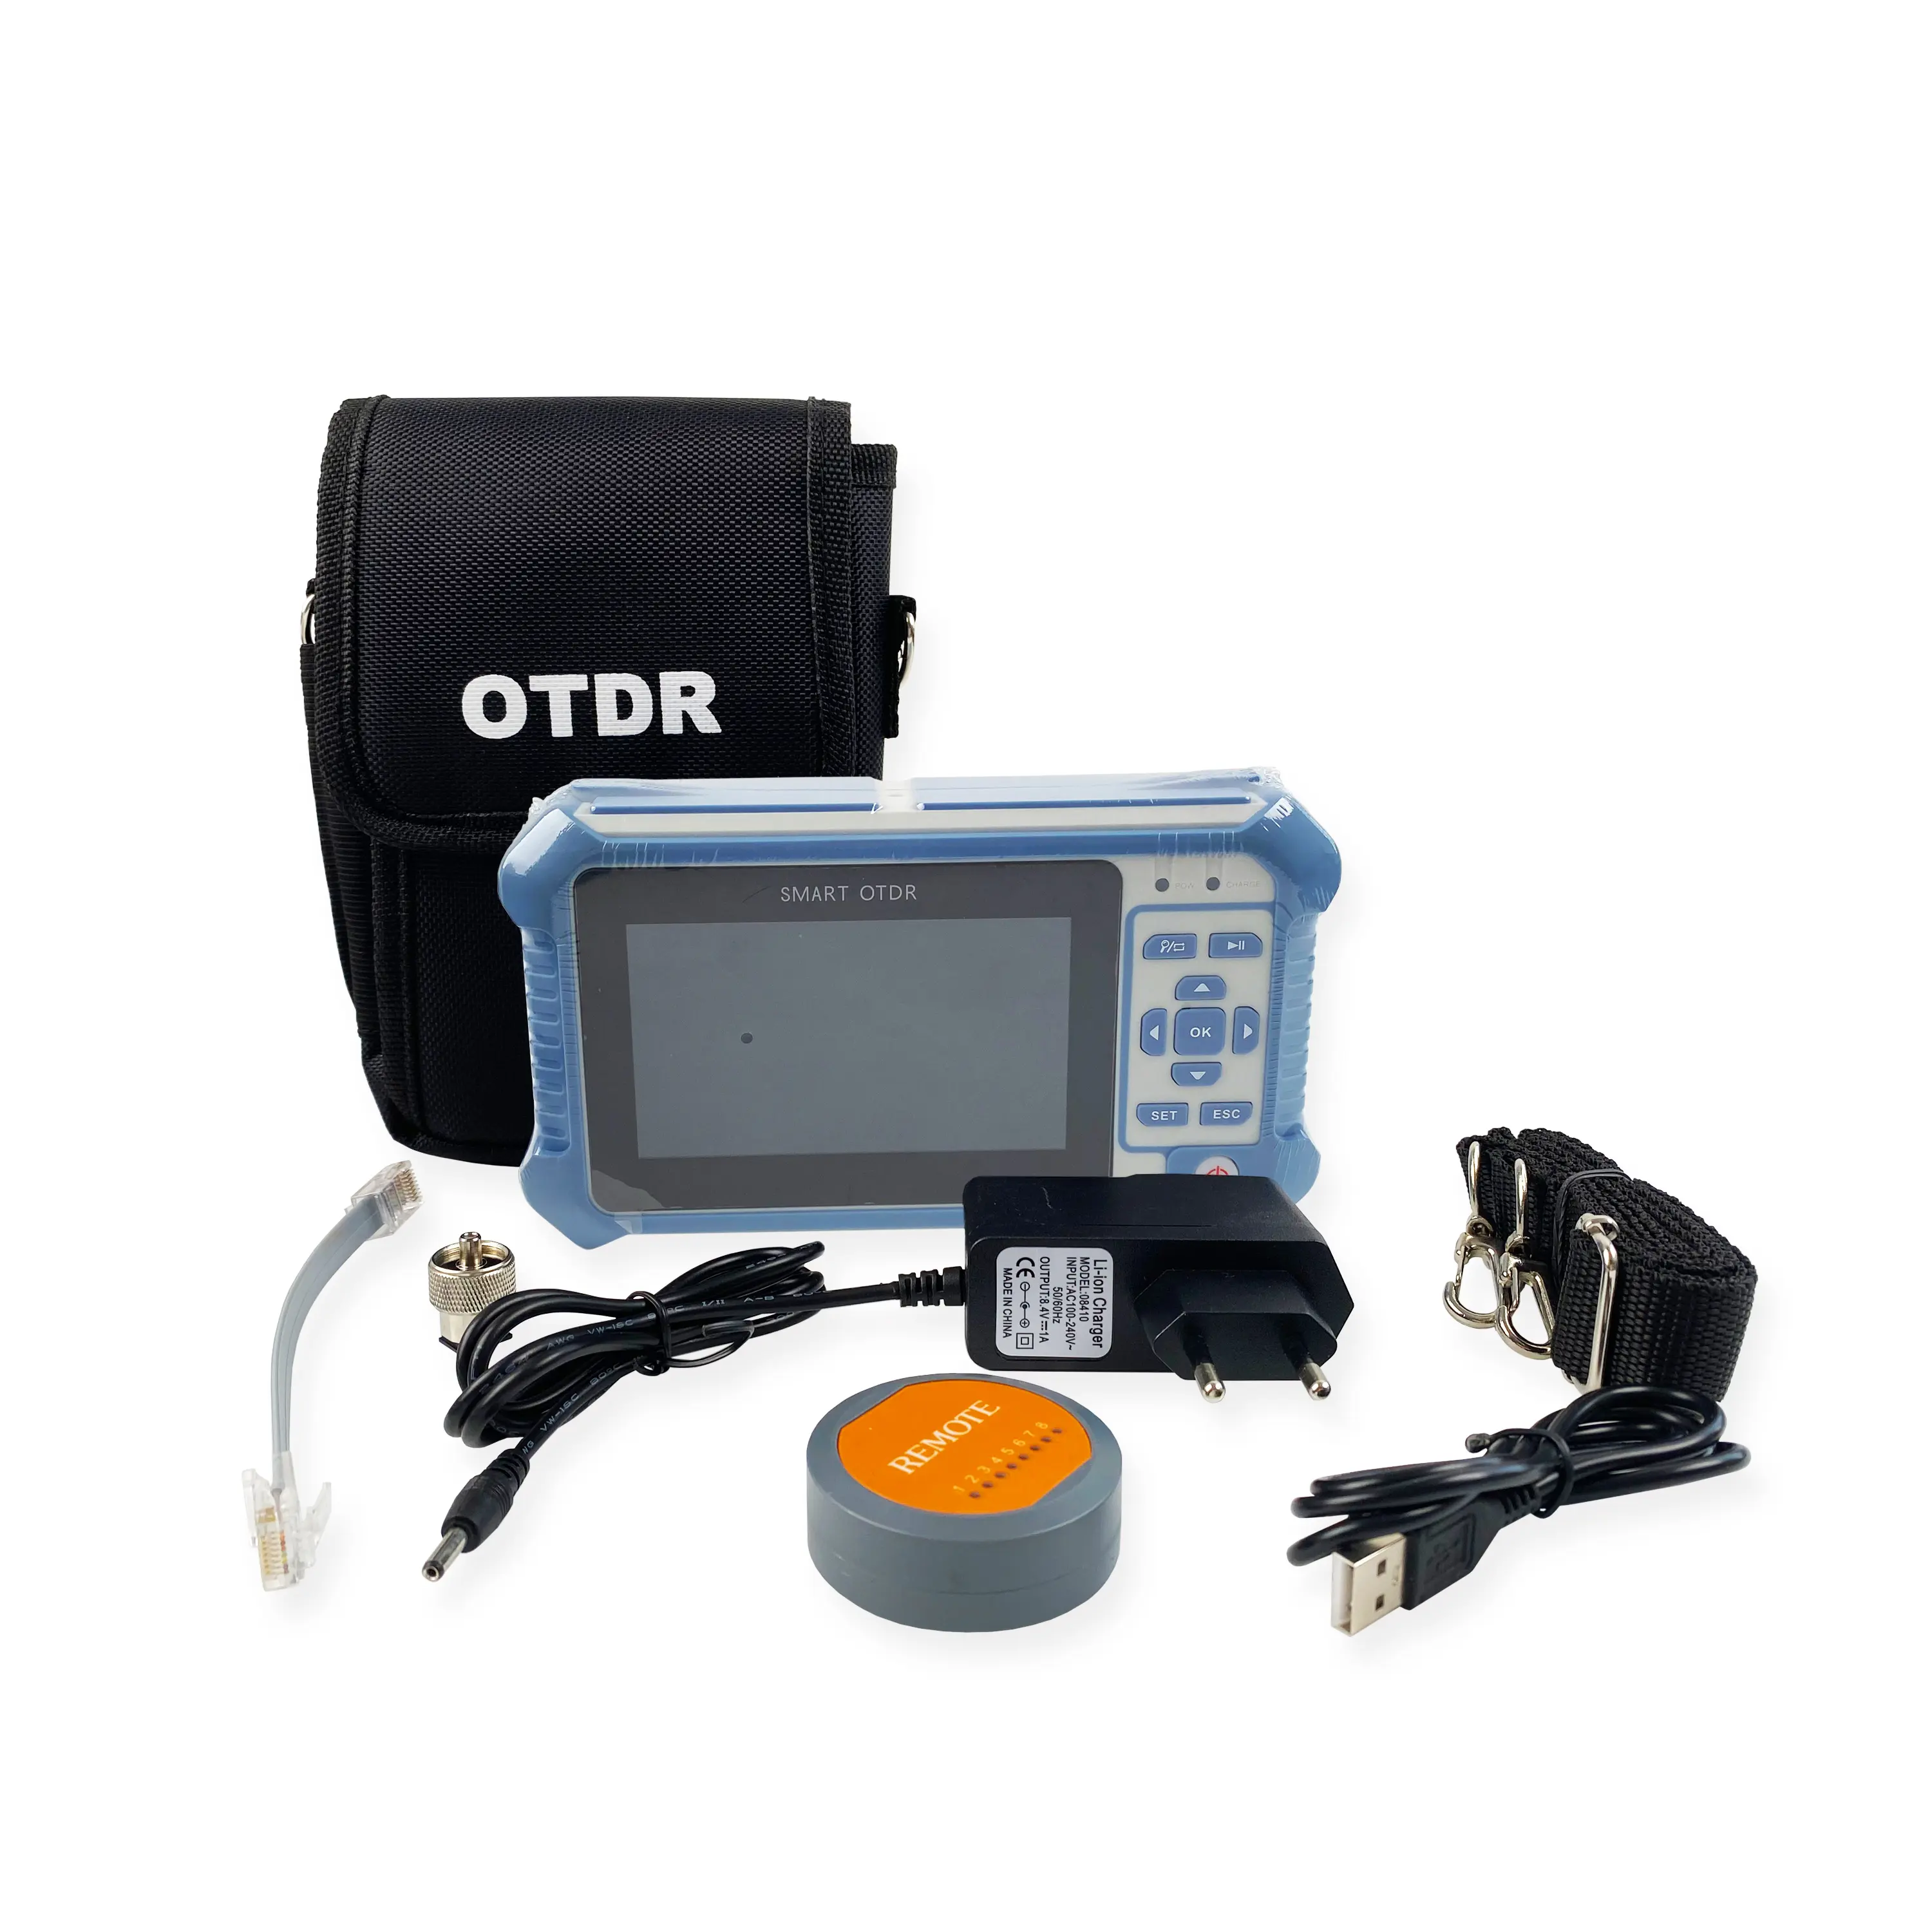 Mini OTDR tm292 màn hình cảm ứng 1310/1550nm 22/24dB đa chức năng OTDR thông minh cầm tay OTDR sợi quang